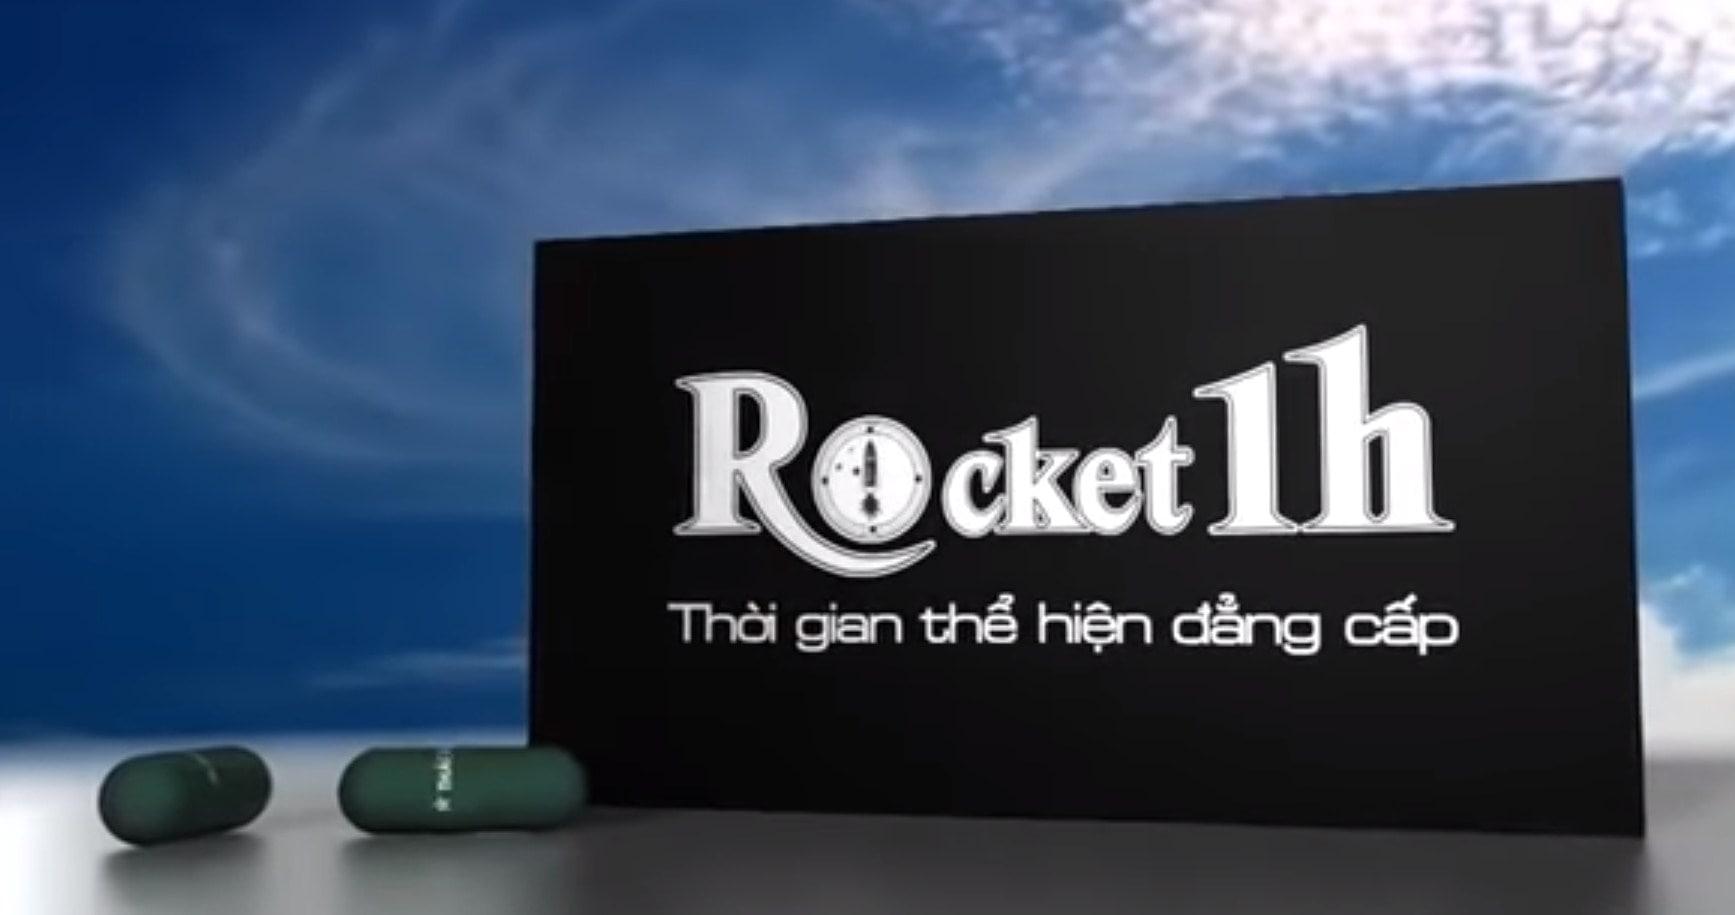 Rocket 1h là sự kết hợp hoàn hảo giữa các dược liệu tự nhiên